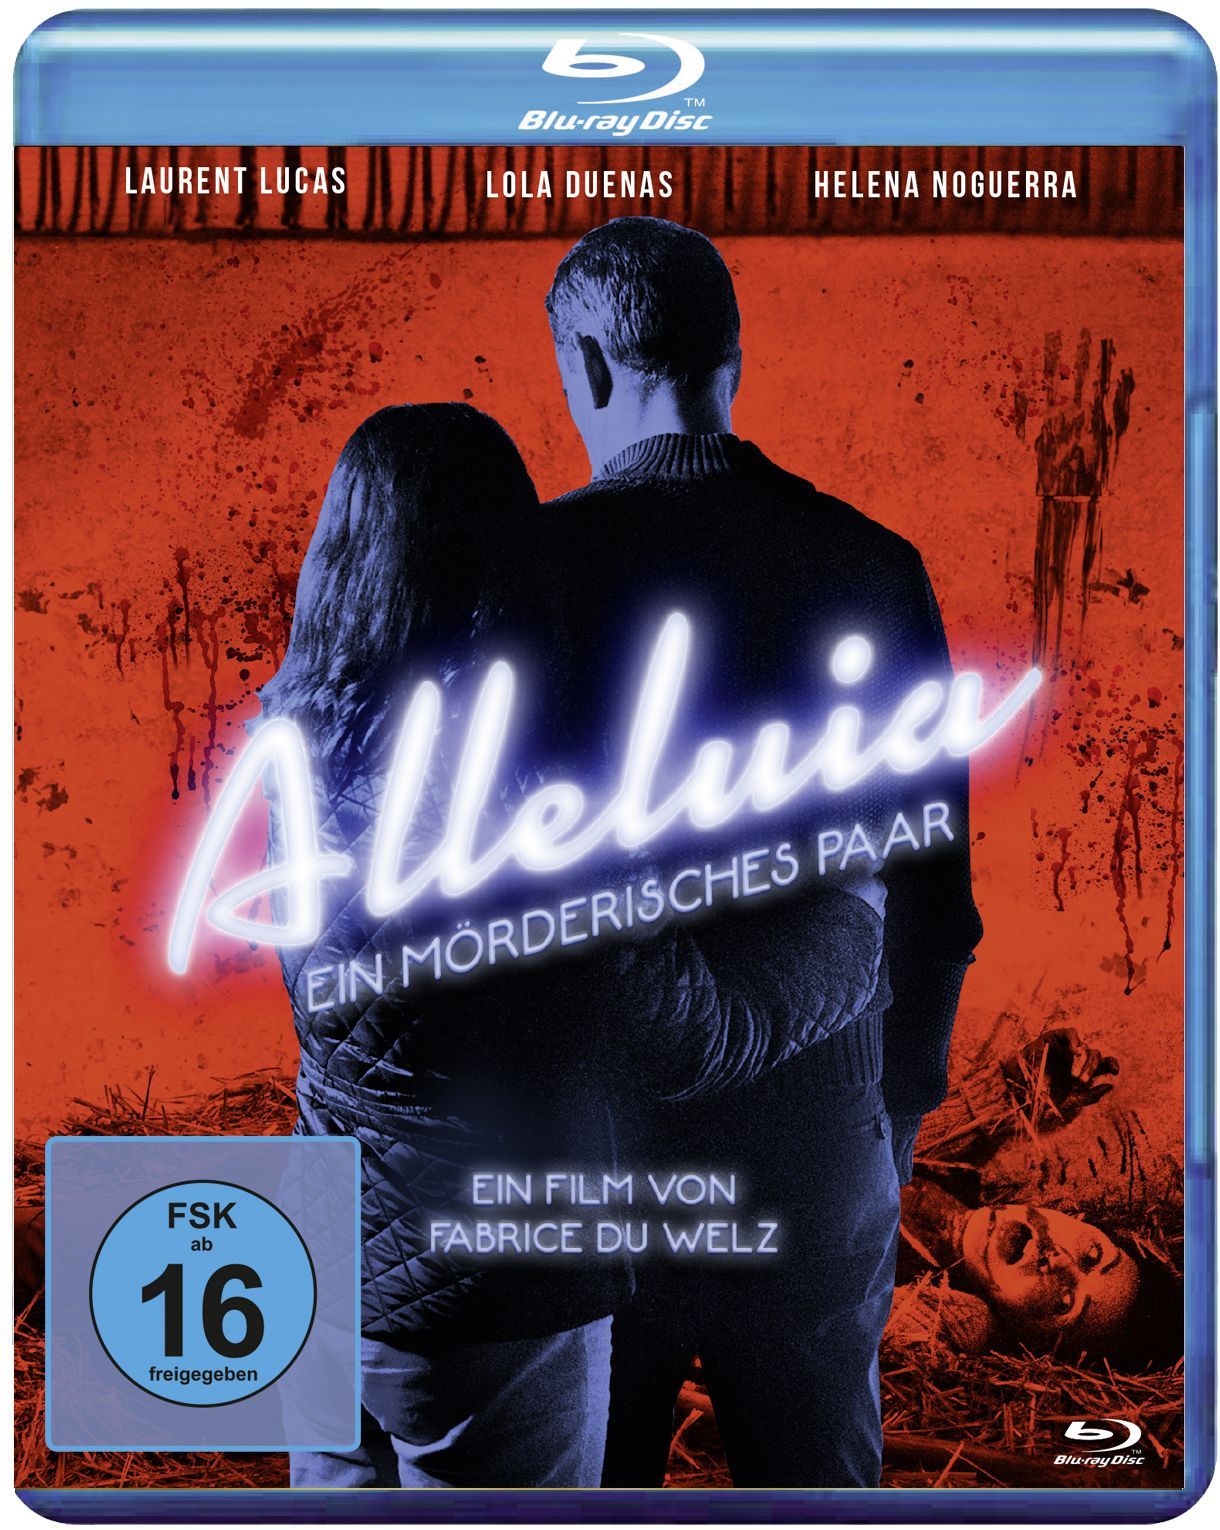 Alleluia - Ein mörderisches Paar